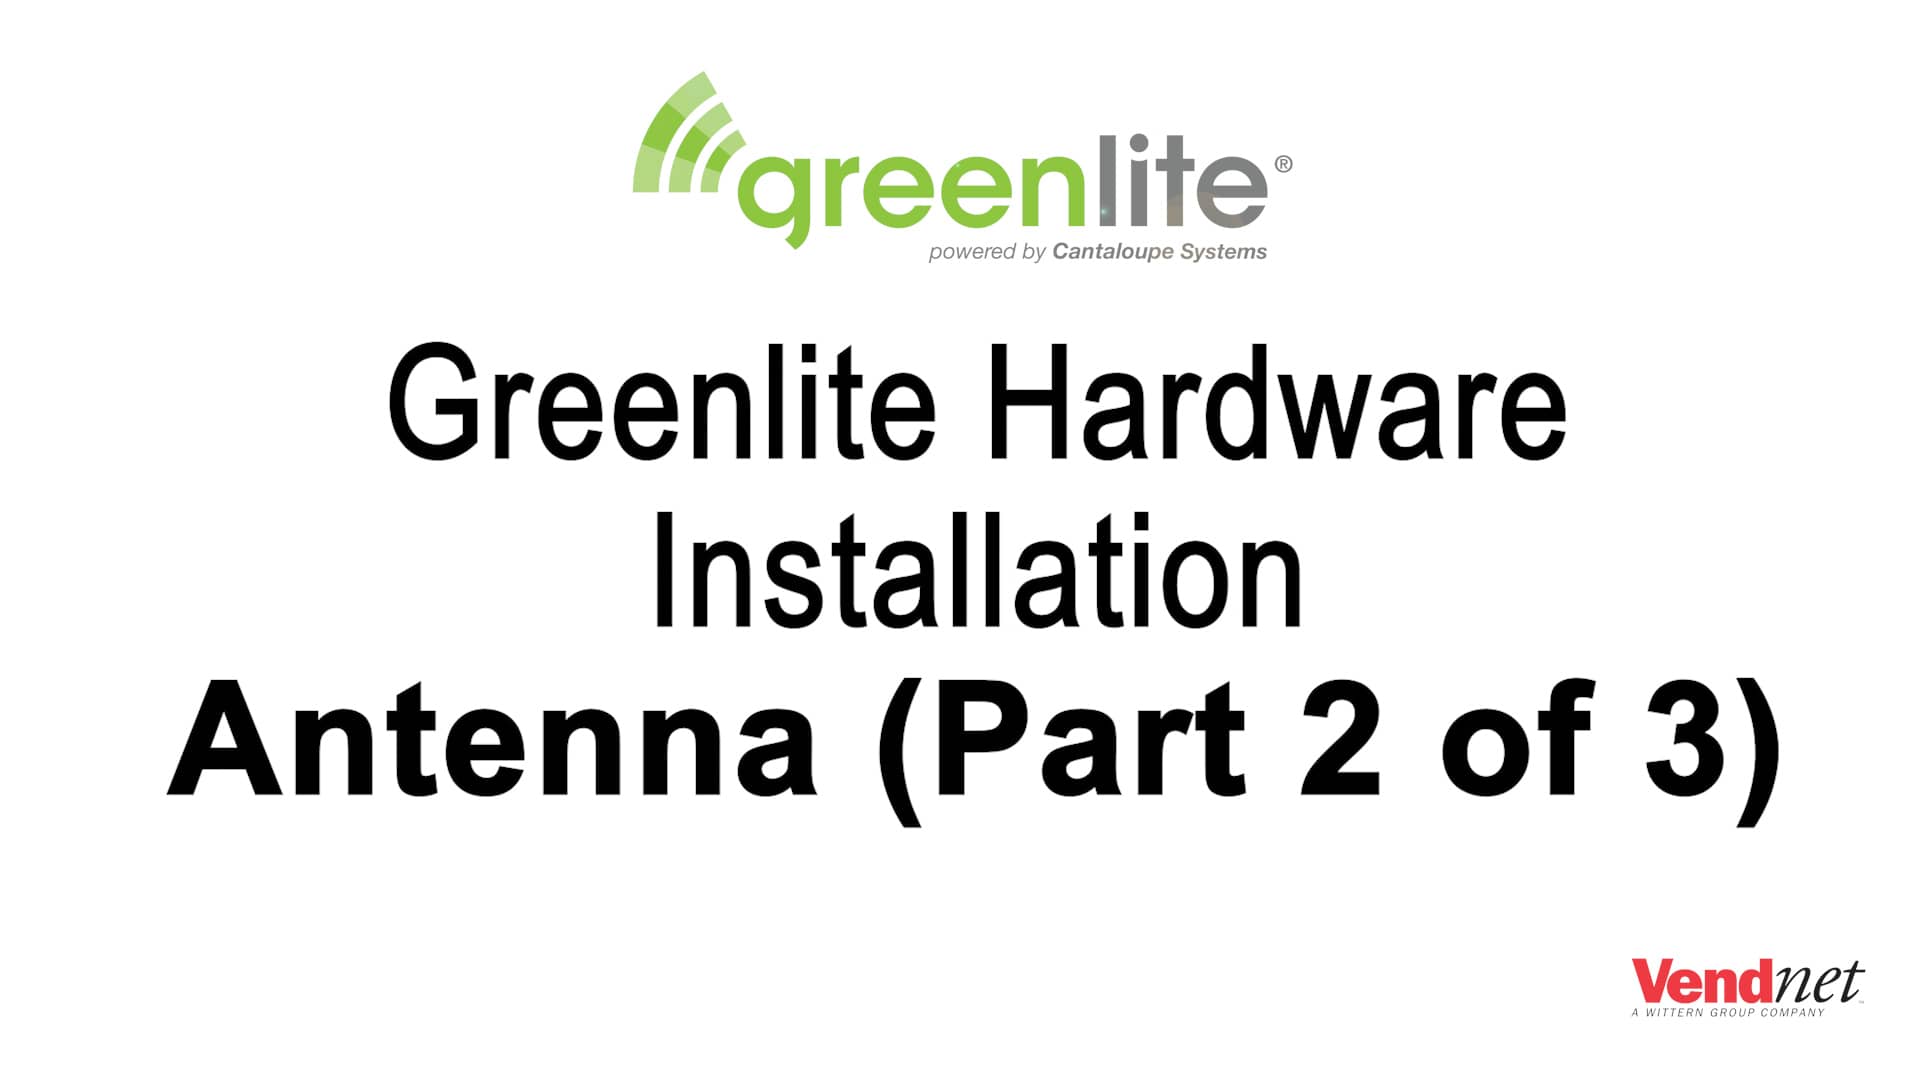 Greenlite Hardware Installation - Antenna Installation Part 2 of 3